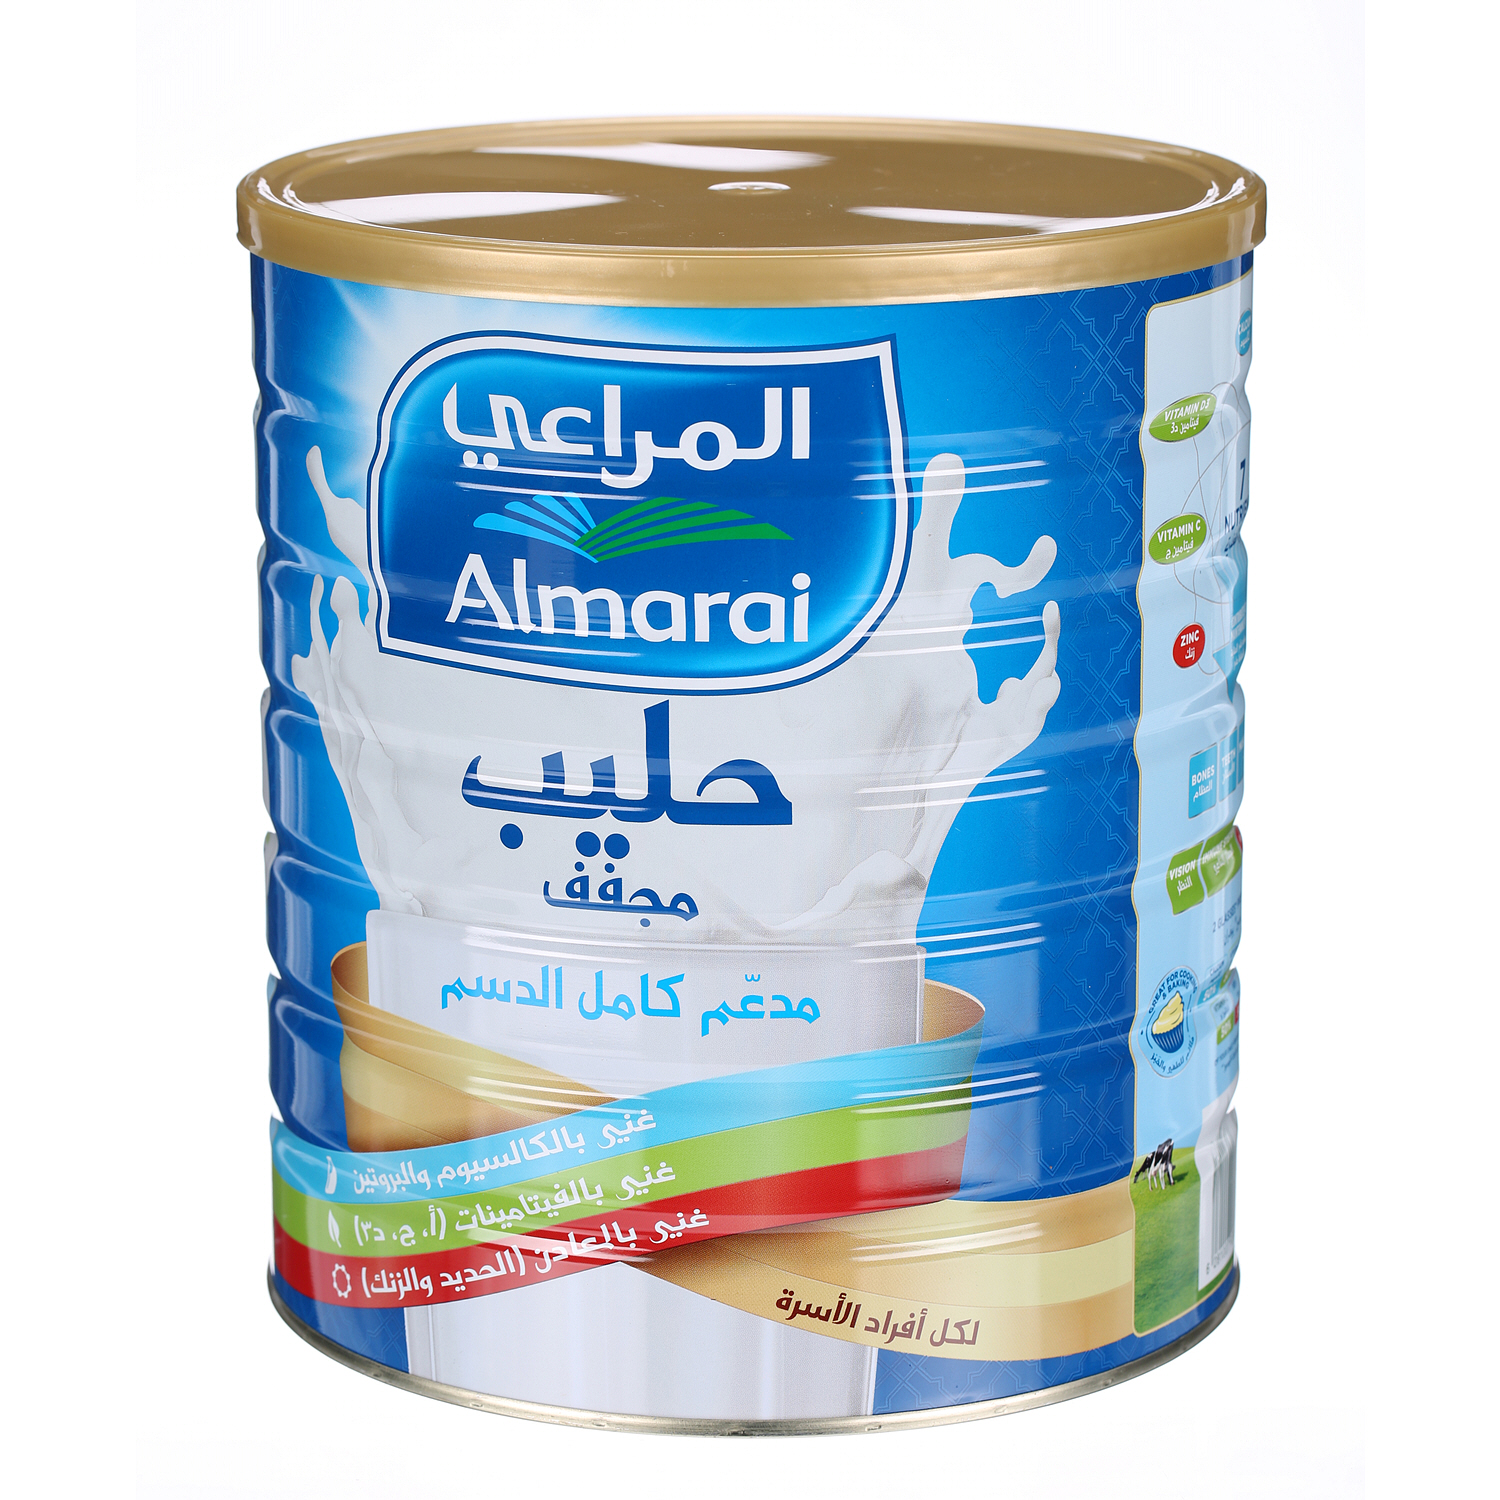 Almarai Milk Powder 2.5Kg